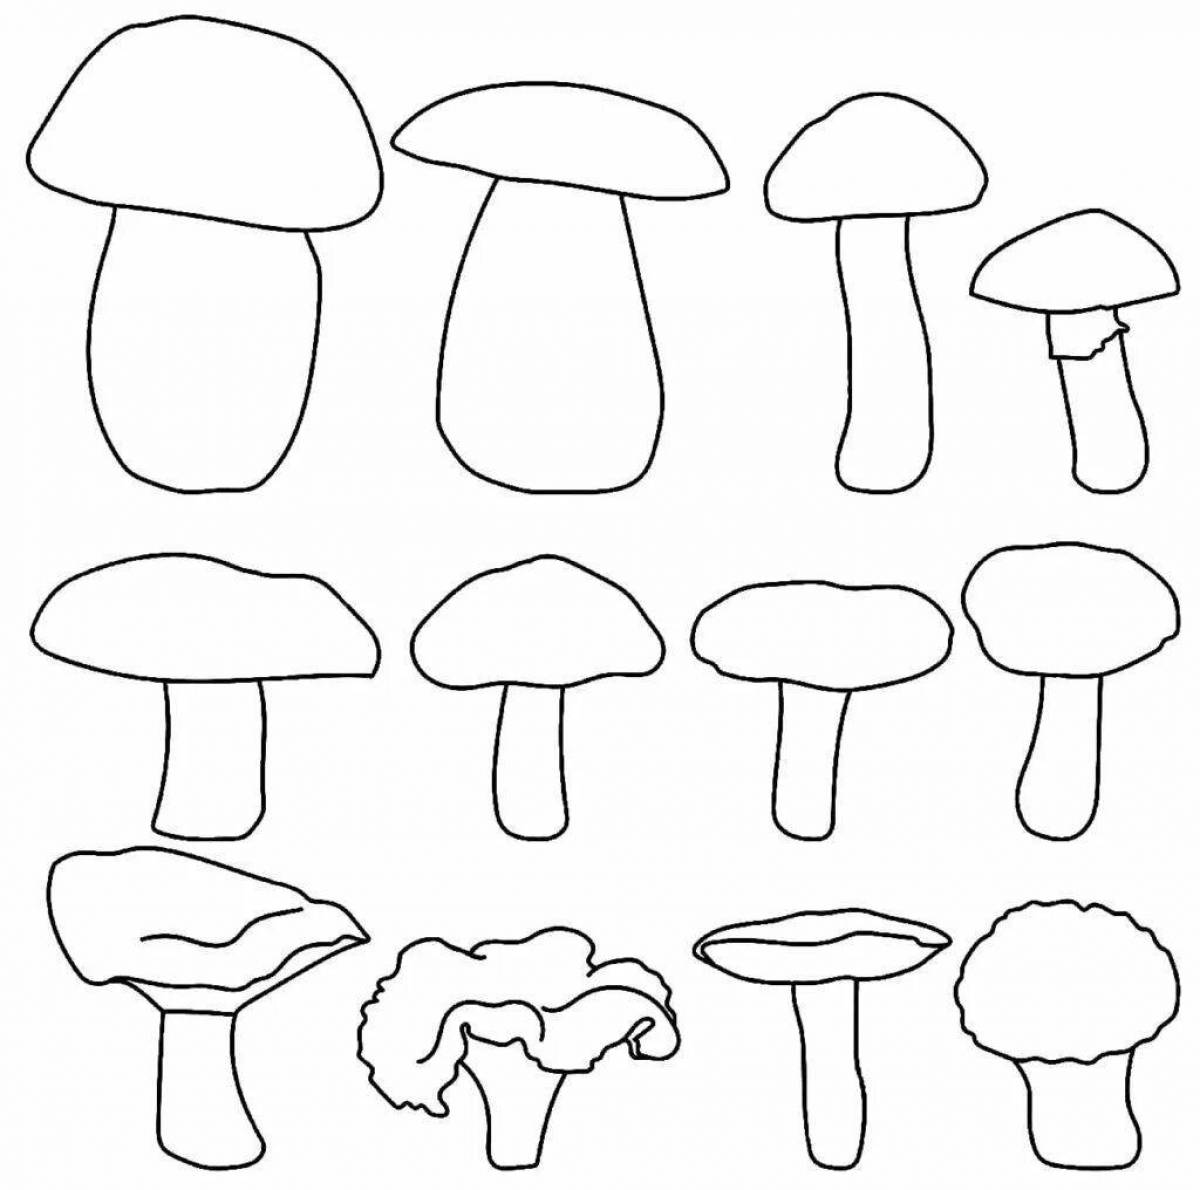 Игривая страница раскраски грибов для детей 6-7 лет